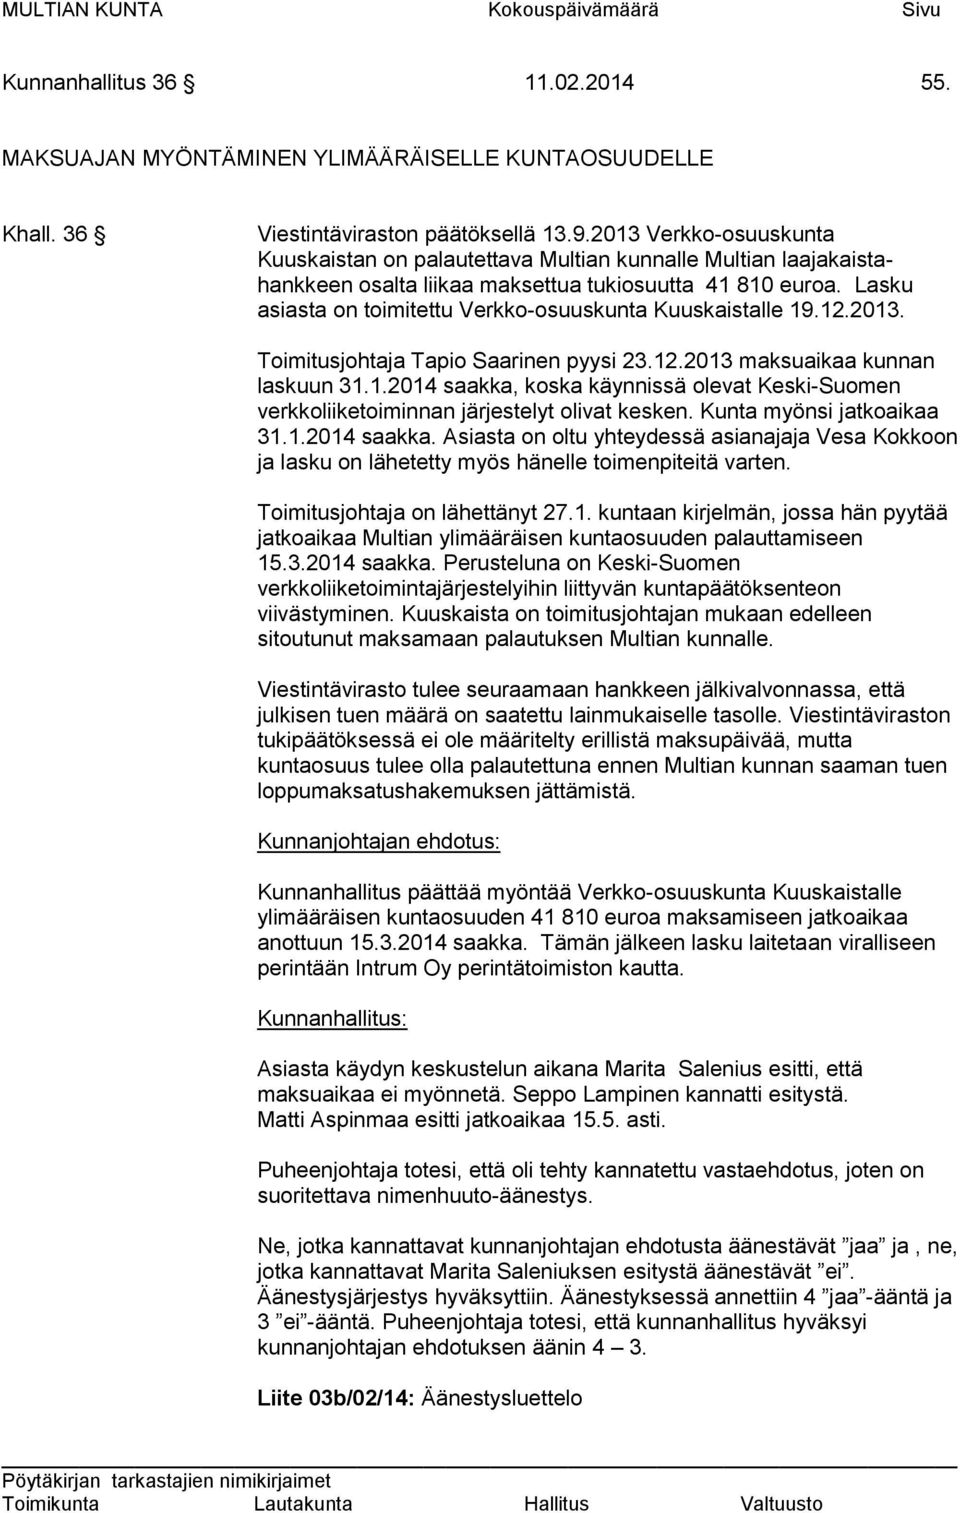 Lasku asiasta on toimitettu Verkko-osuuskunta Kuuskaistalle 19.12.2013. Toimitusjohtaja Tapio Saarinen pyysi 23.12.2013 maksuaikaa kunnan laskuun 31.1.2014 saakka, koska käynnissä olevat Keski-Suomen verkkoliiketoiminnan järjestelyt olivat kesken.